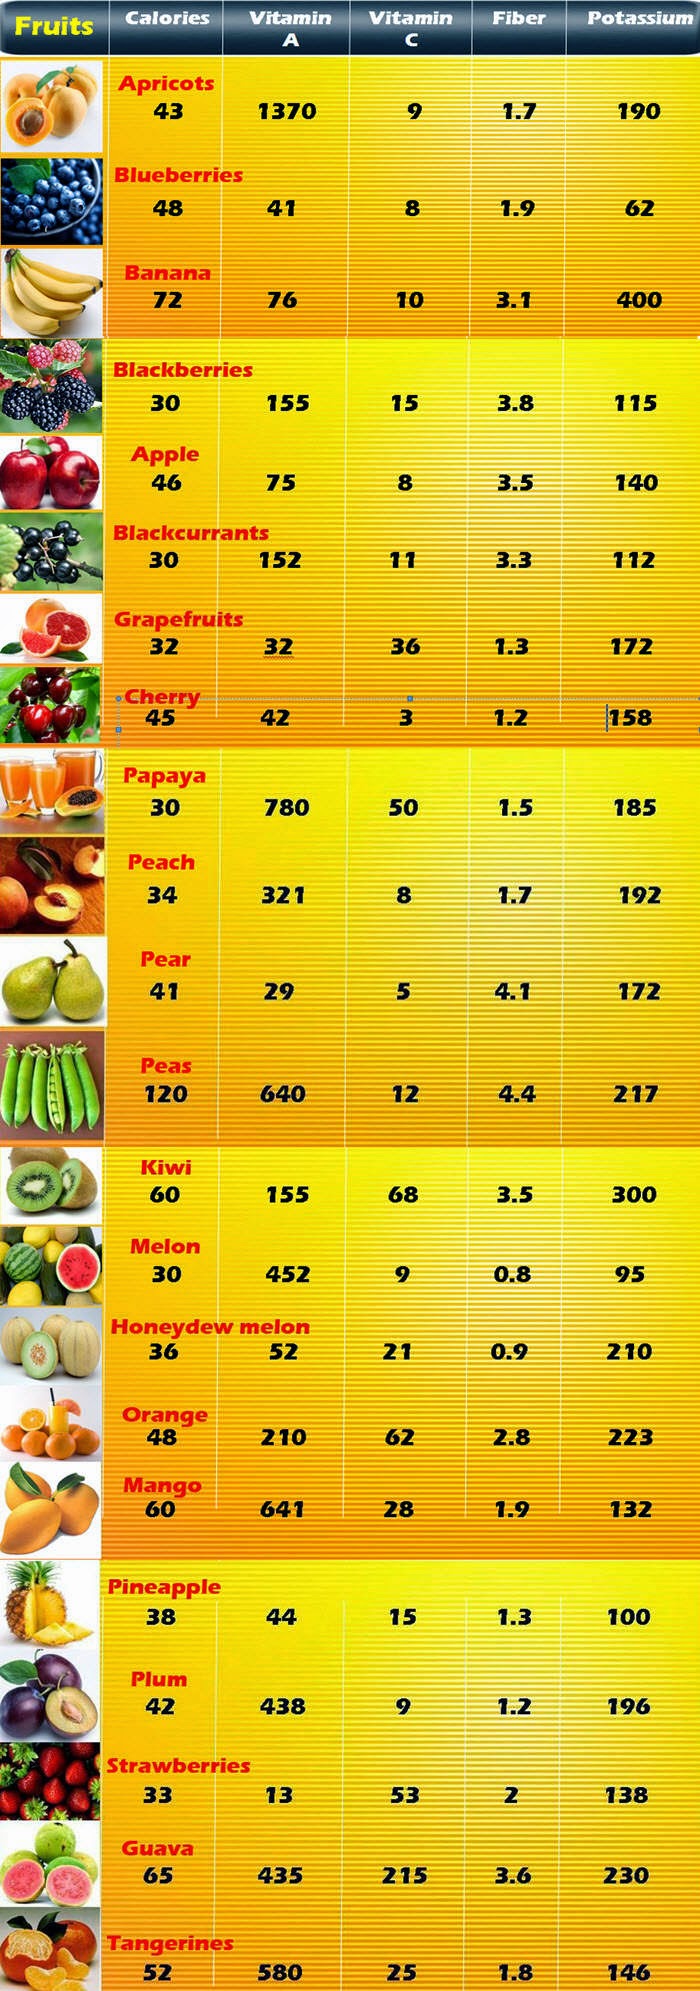 Low Calorie Chart